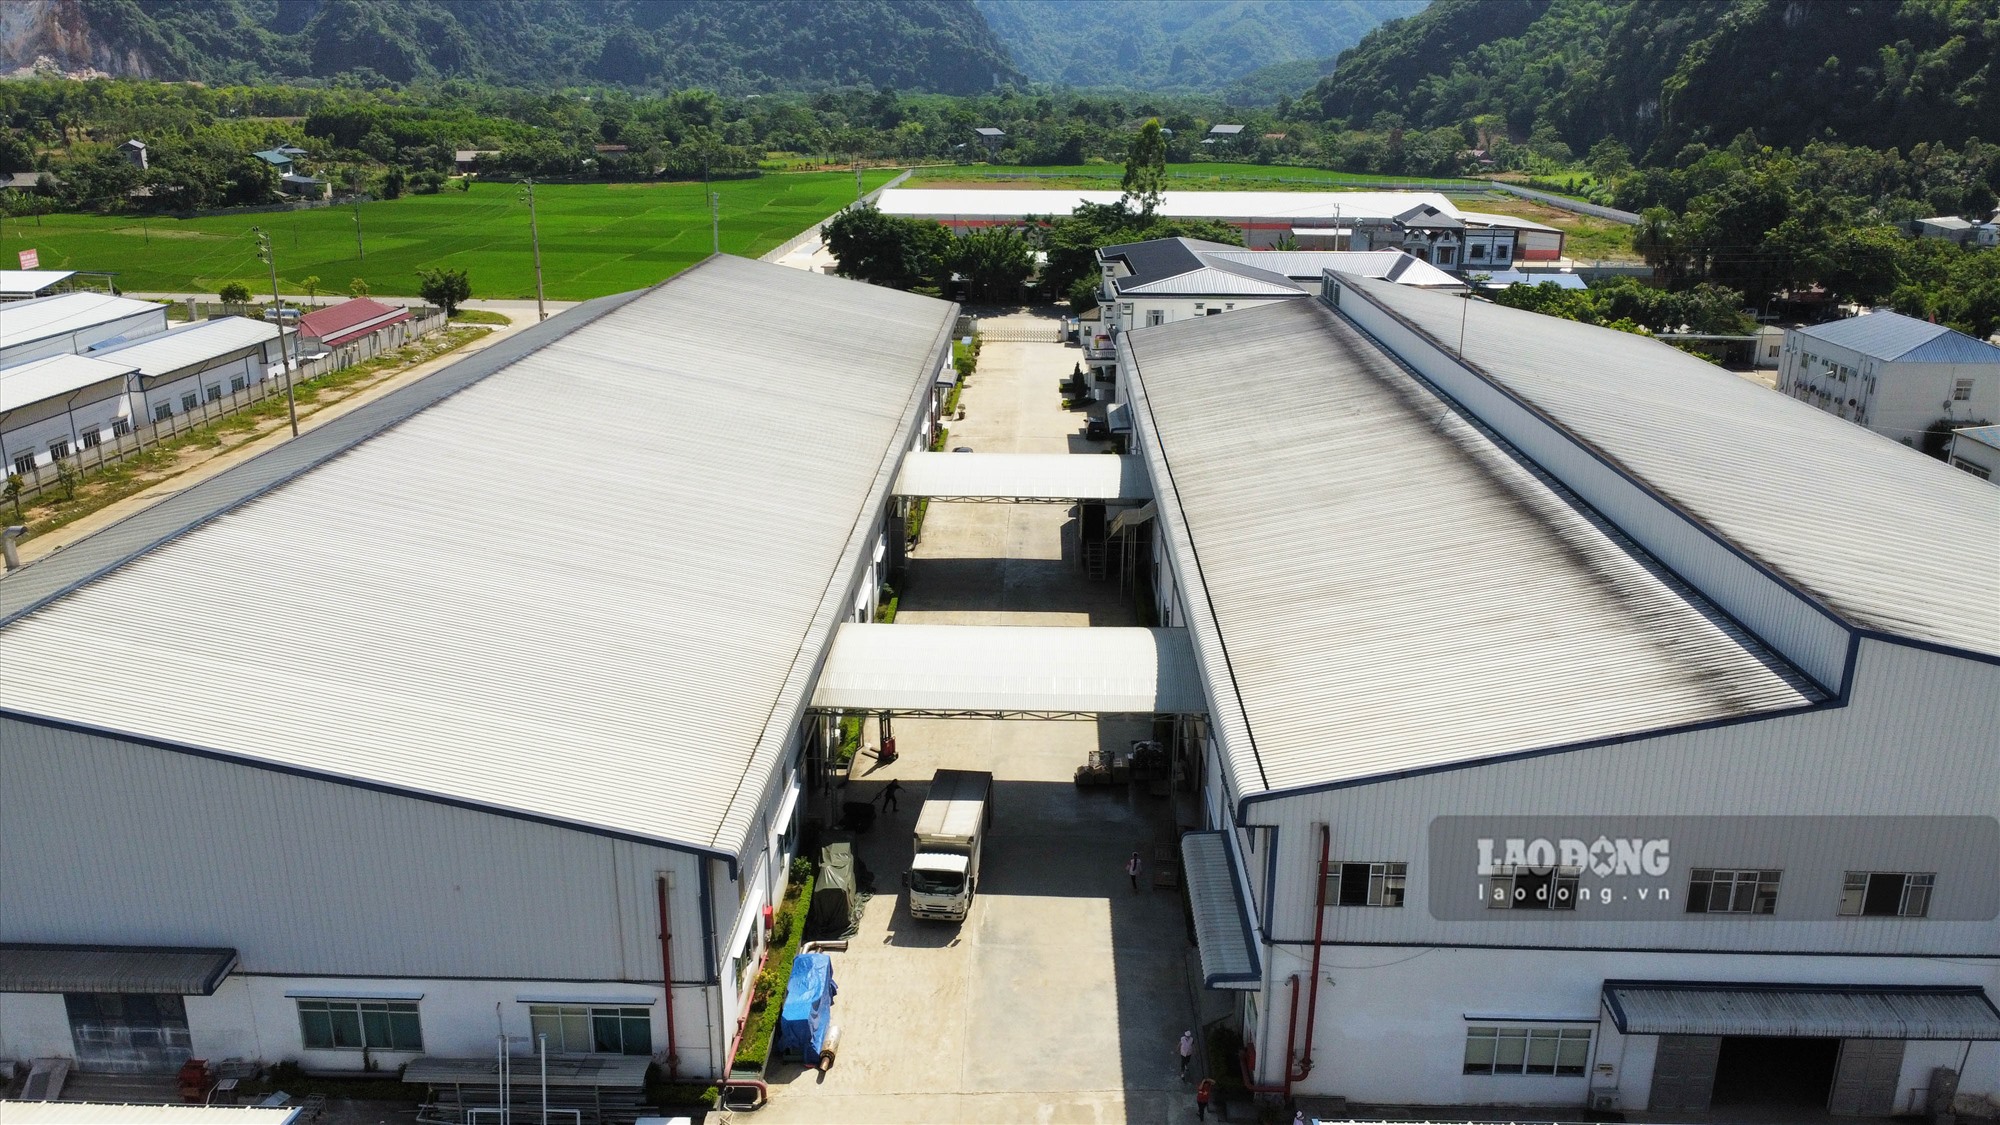 Nhà xưởng và các công trình phụ trợ (giai đoạn 1) của Công ty Phúc Sinh đã được cho 1 đơn vị nước ngoài thuê để làm xưởng sản xuất, gia công dày dép từ tháng 7.2021.